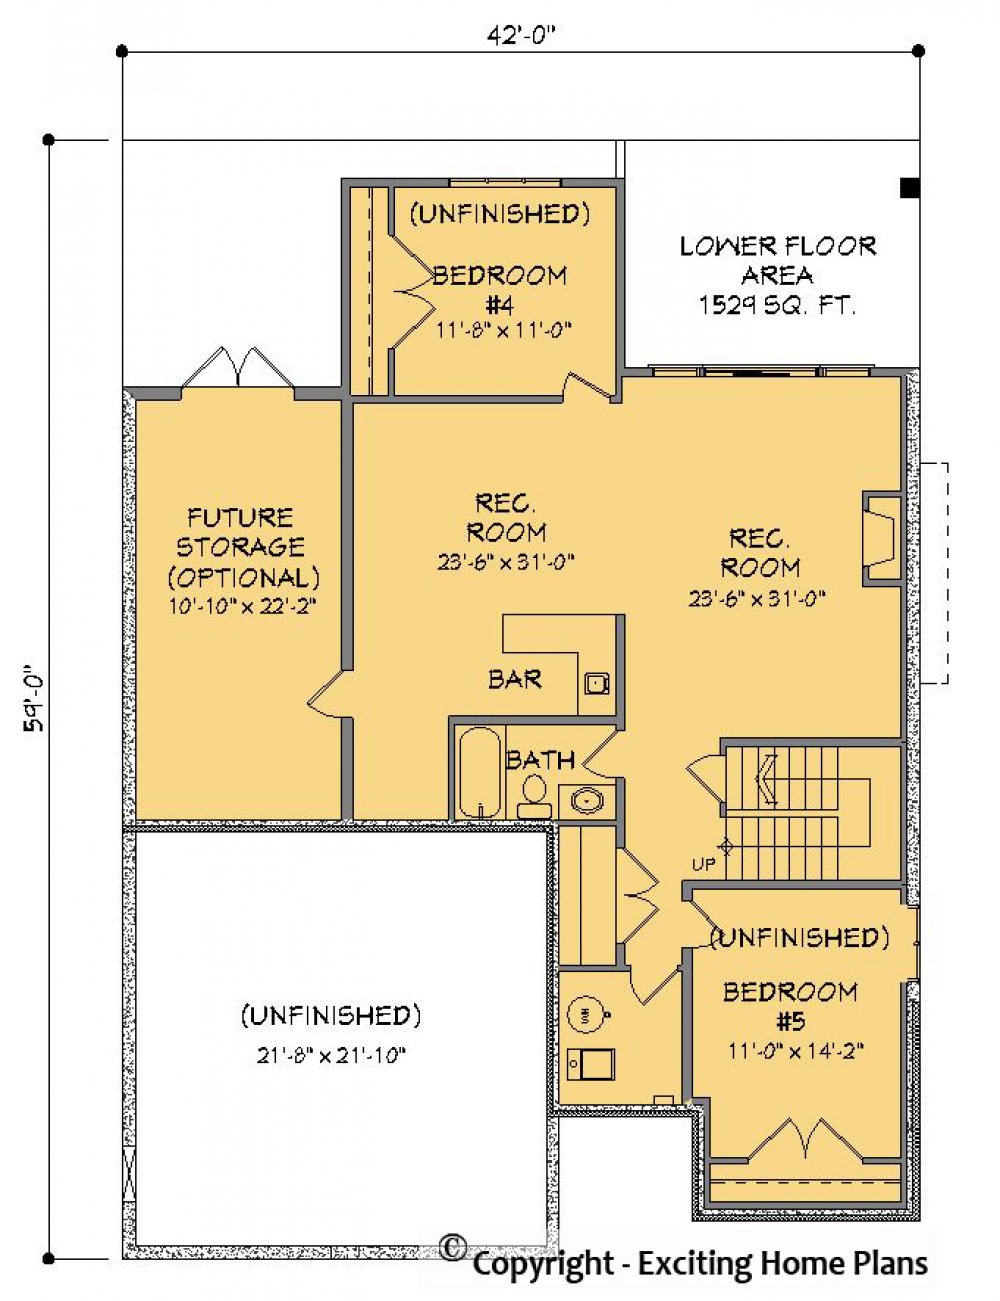 House Plan E1373-10 Lower Floor Plan